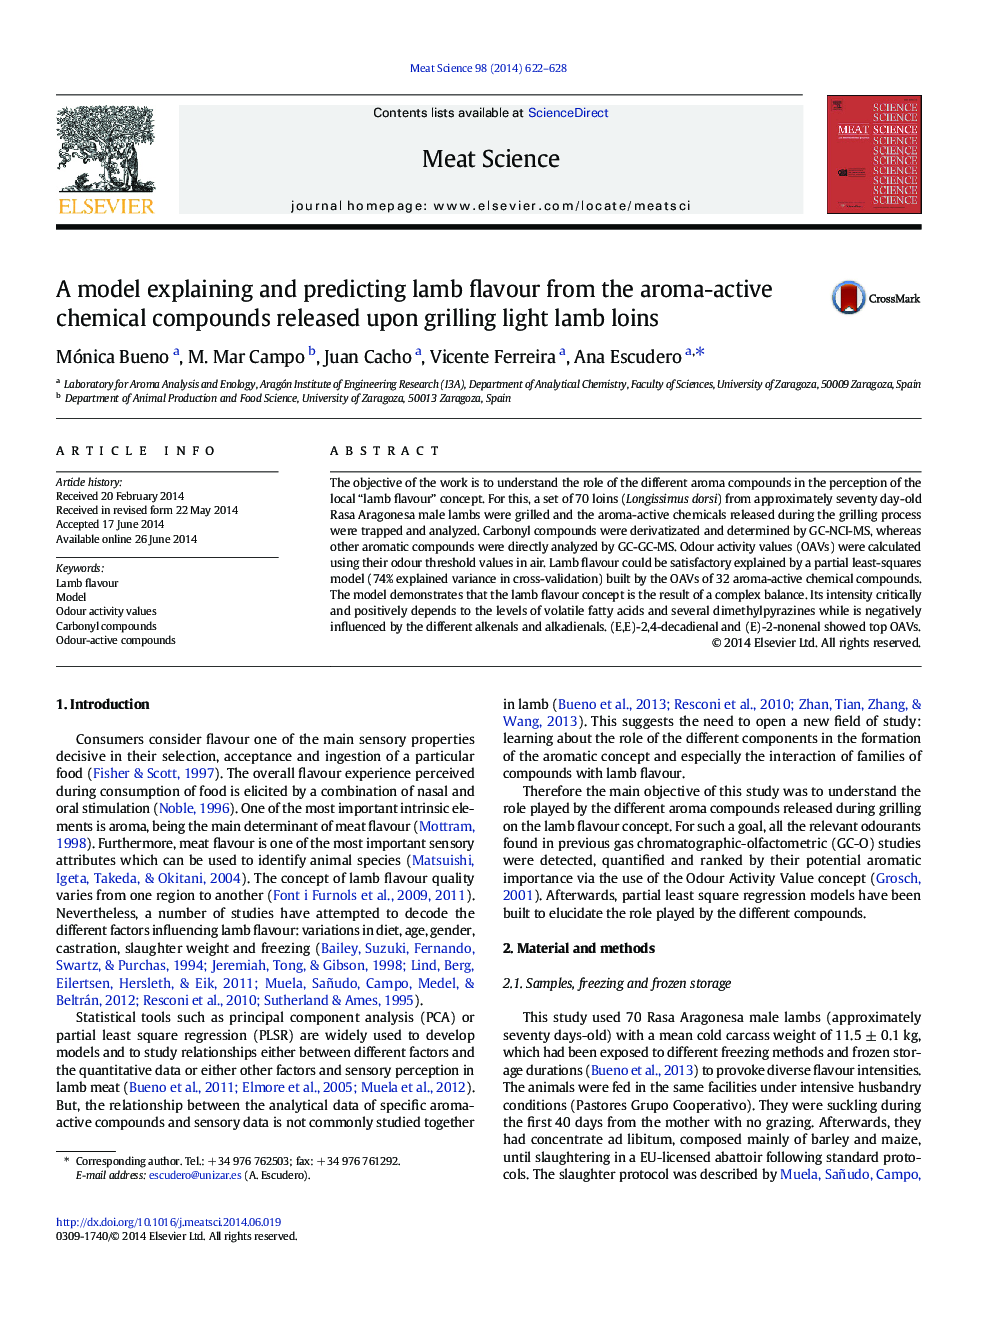 یک مدل توضیح و پیش بینی عطر و طعم بره را از ترکیبات شیمیایی فعال عطر منتشر شده بر روی غربال بره های بره نور 